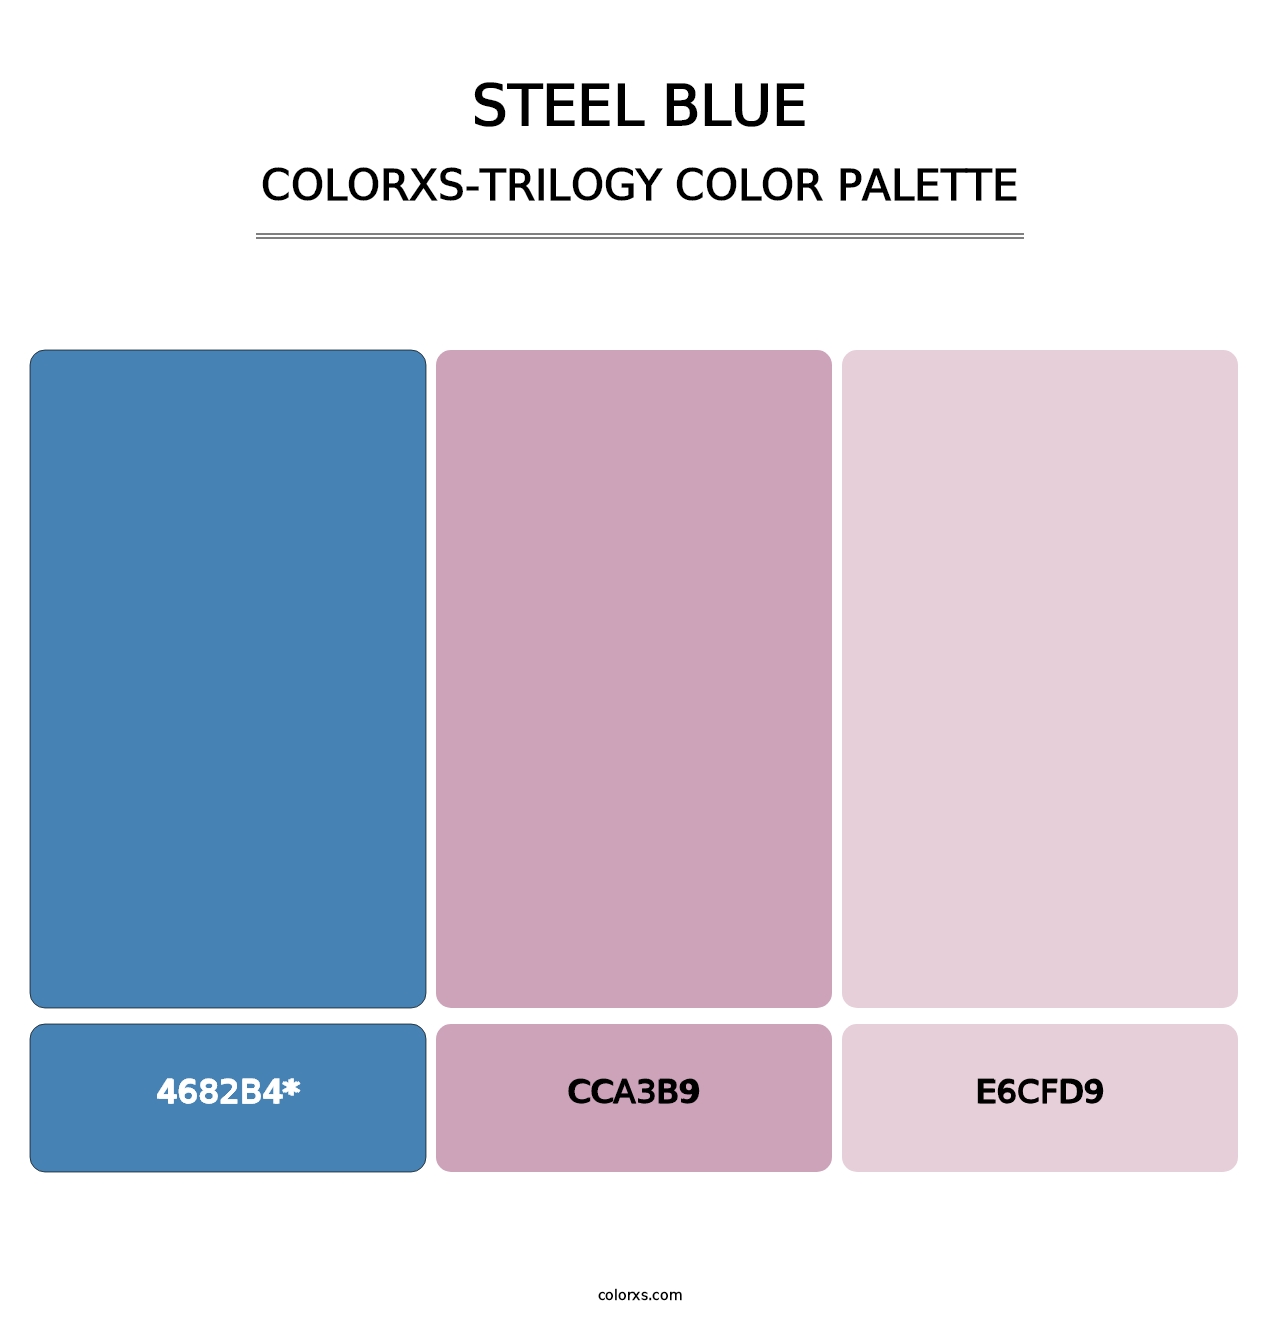 Steel Blue - Colorxs Trilogy Palette